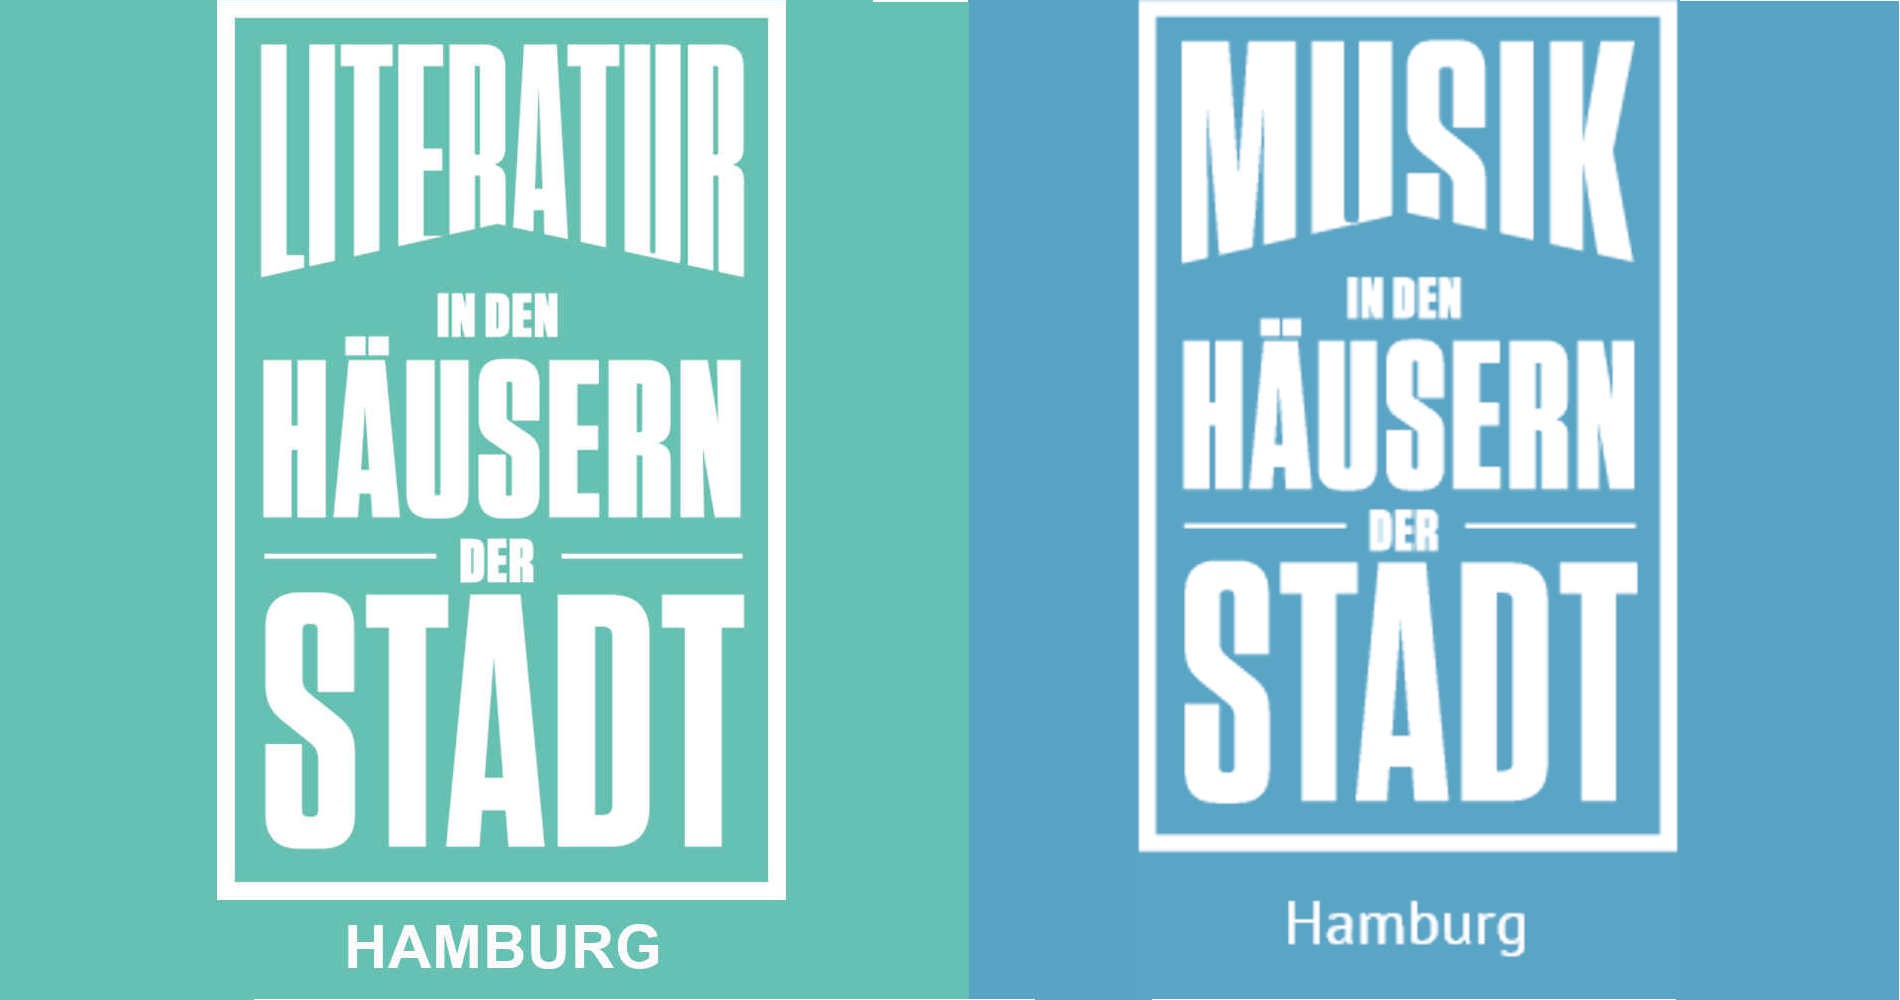 Musik und Literatur in den Häusern der Stadt - Hamburg | Hans-Kauffmann-Stiftung loading=